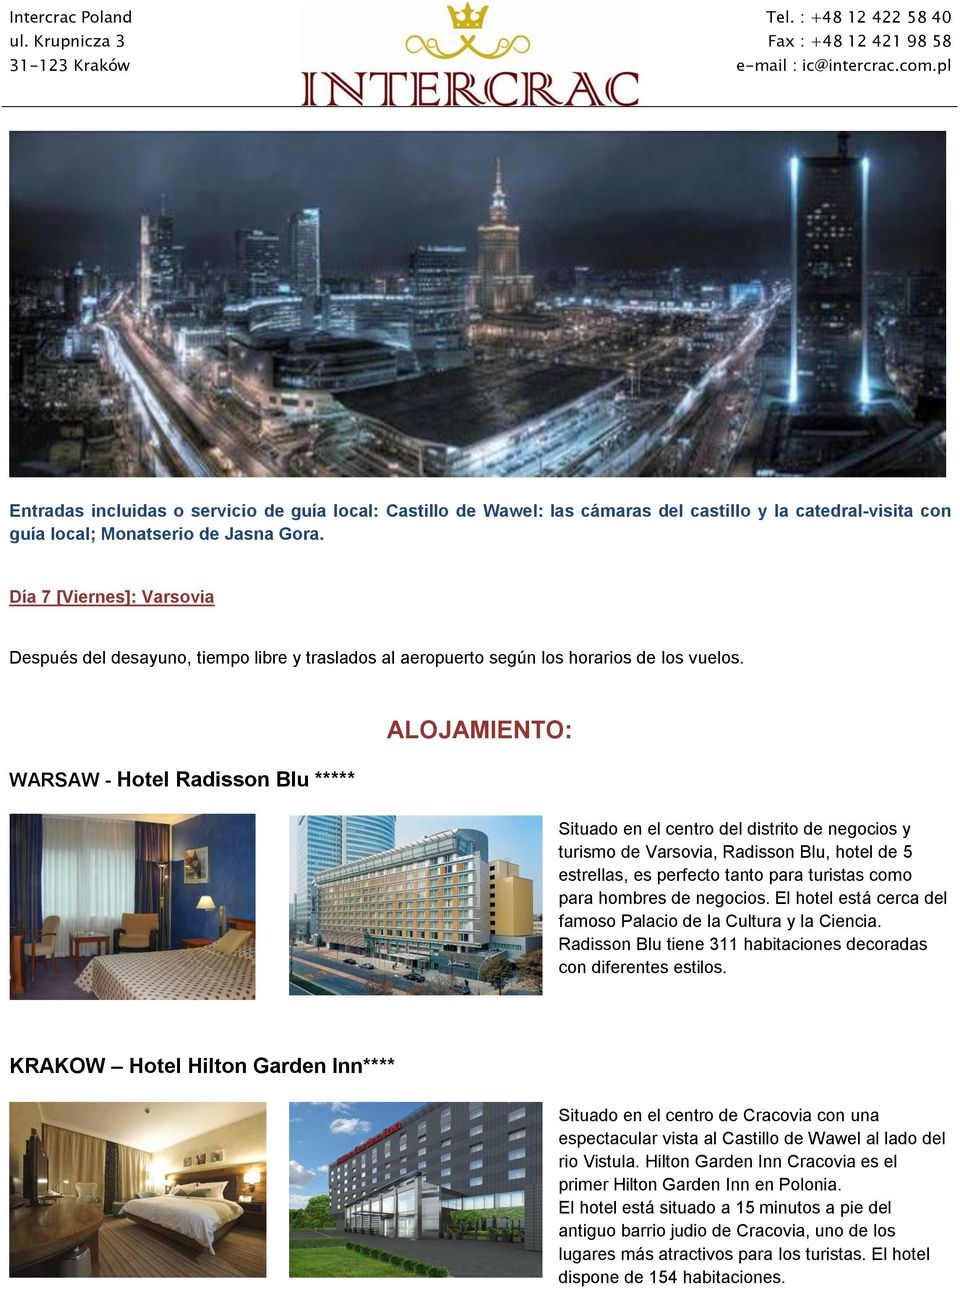 WARSAW - Hotel Radisson Blu ***** ALOJAMIENTO: Situado en el centro del distrito de negocios y turismo de Varsovia, Radisson Blu, hotel de 5 estrellas, es perfecto tanto para turistas como para